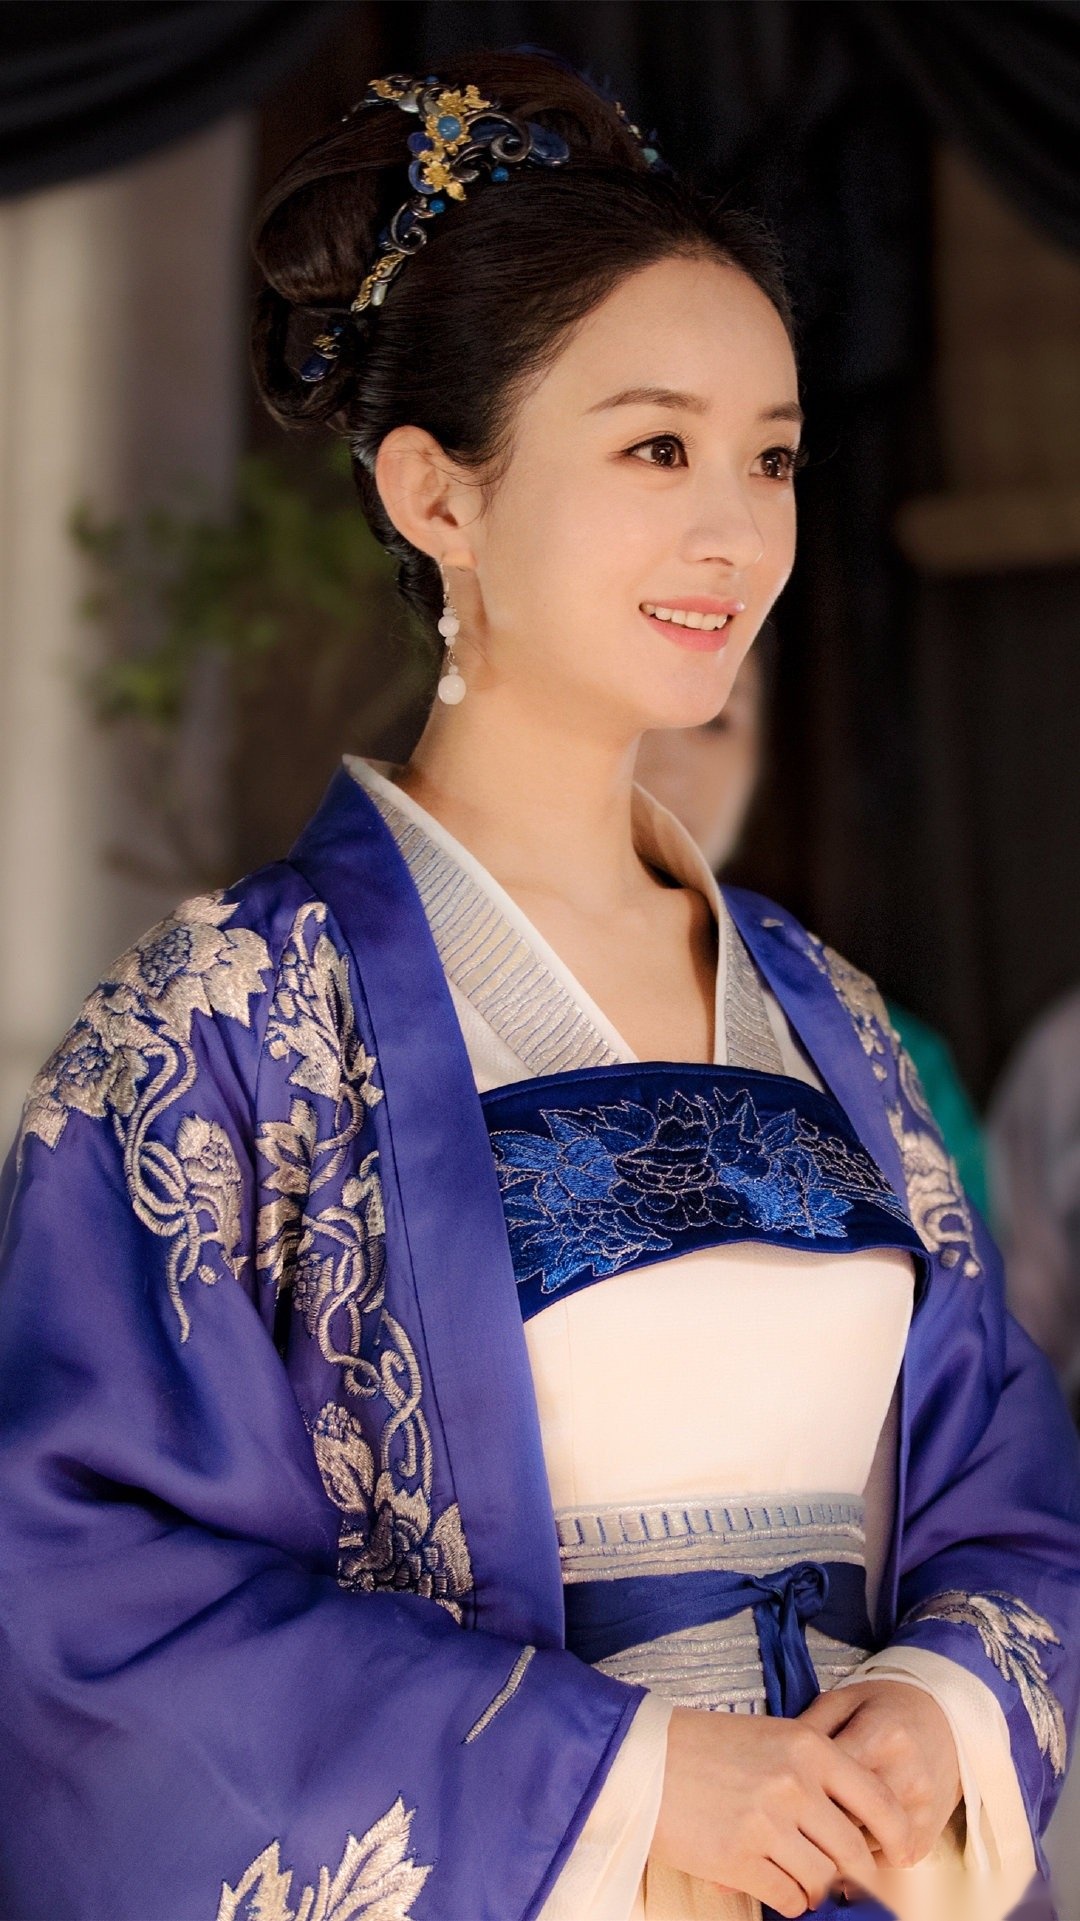 知否中赵丽颖饰演的明兰高贵典雅的婚服和头饰,一改常态,以绿色调为主